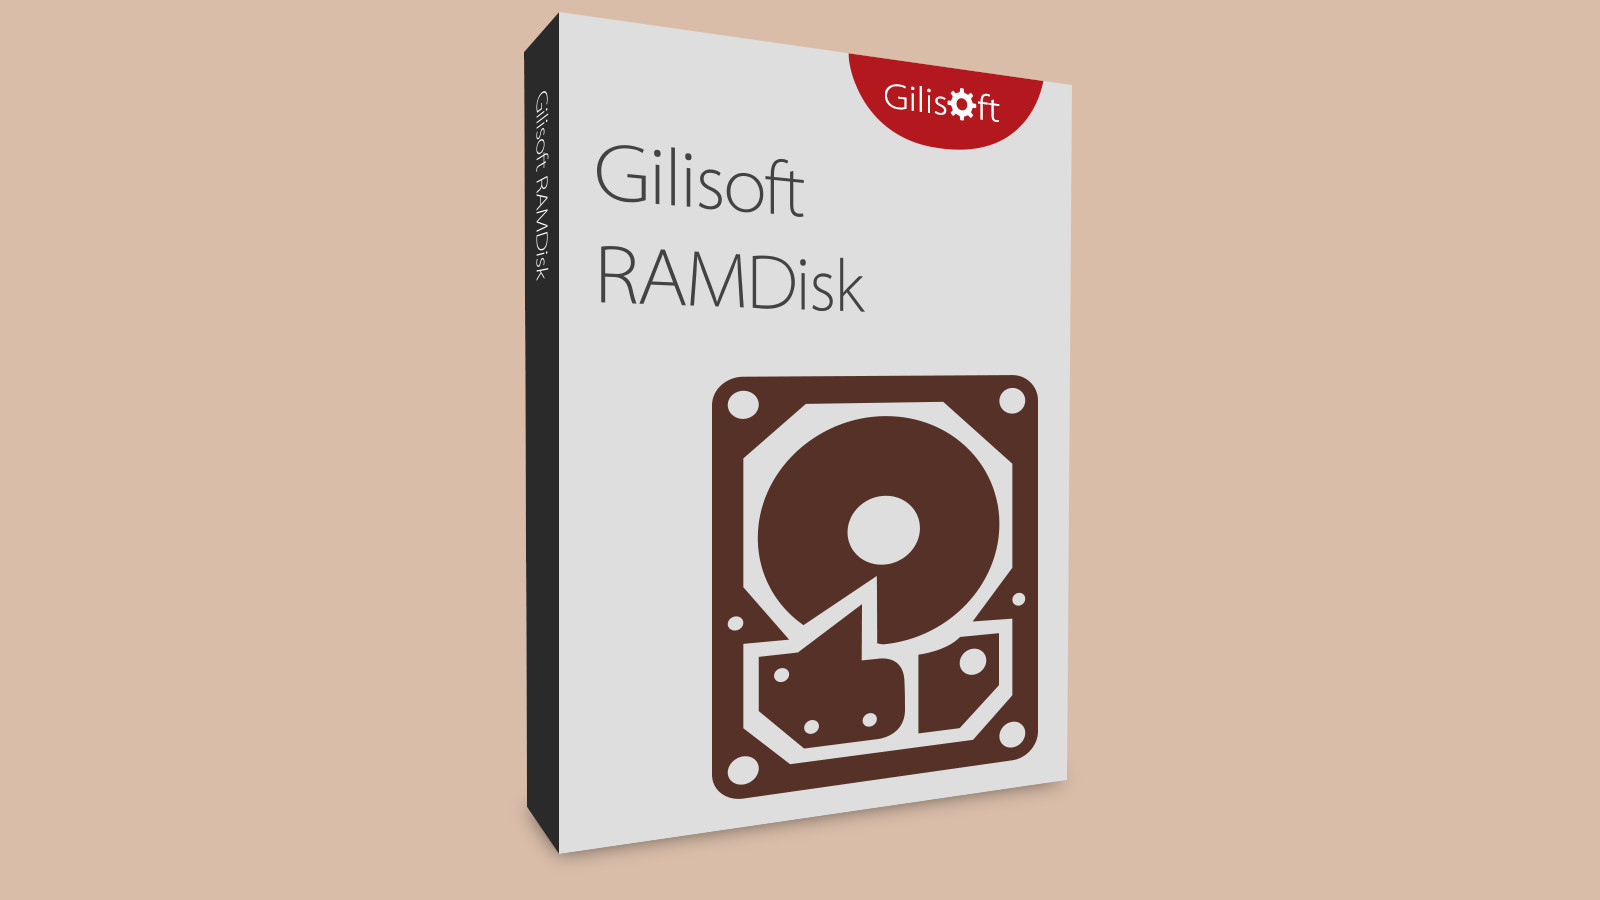 Gilisoft RAMDisk CD Key, 15.54$